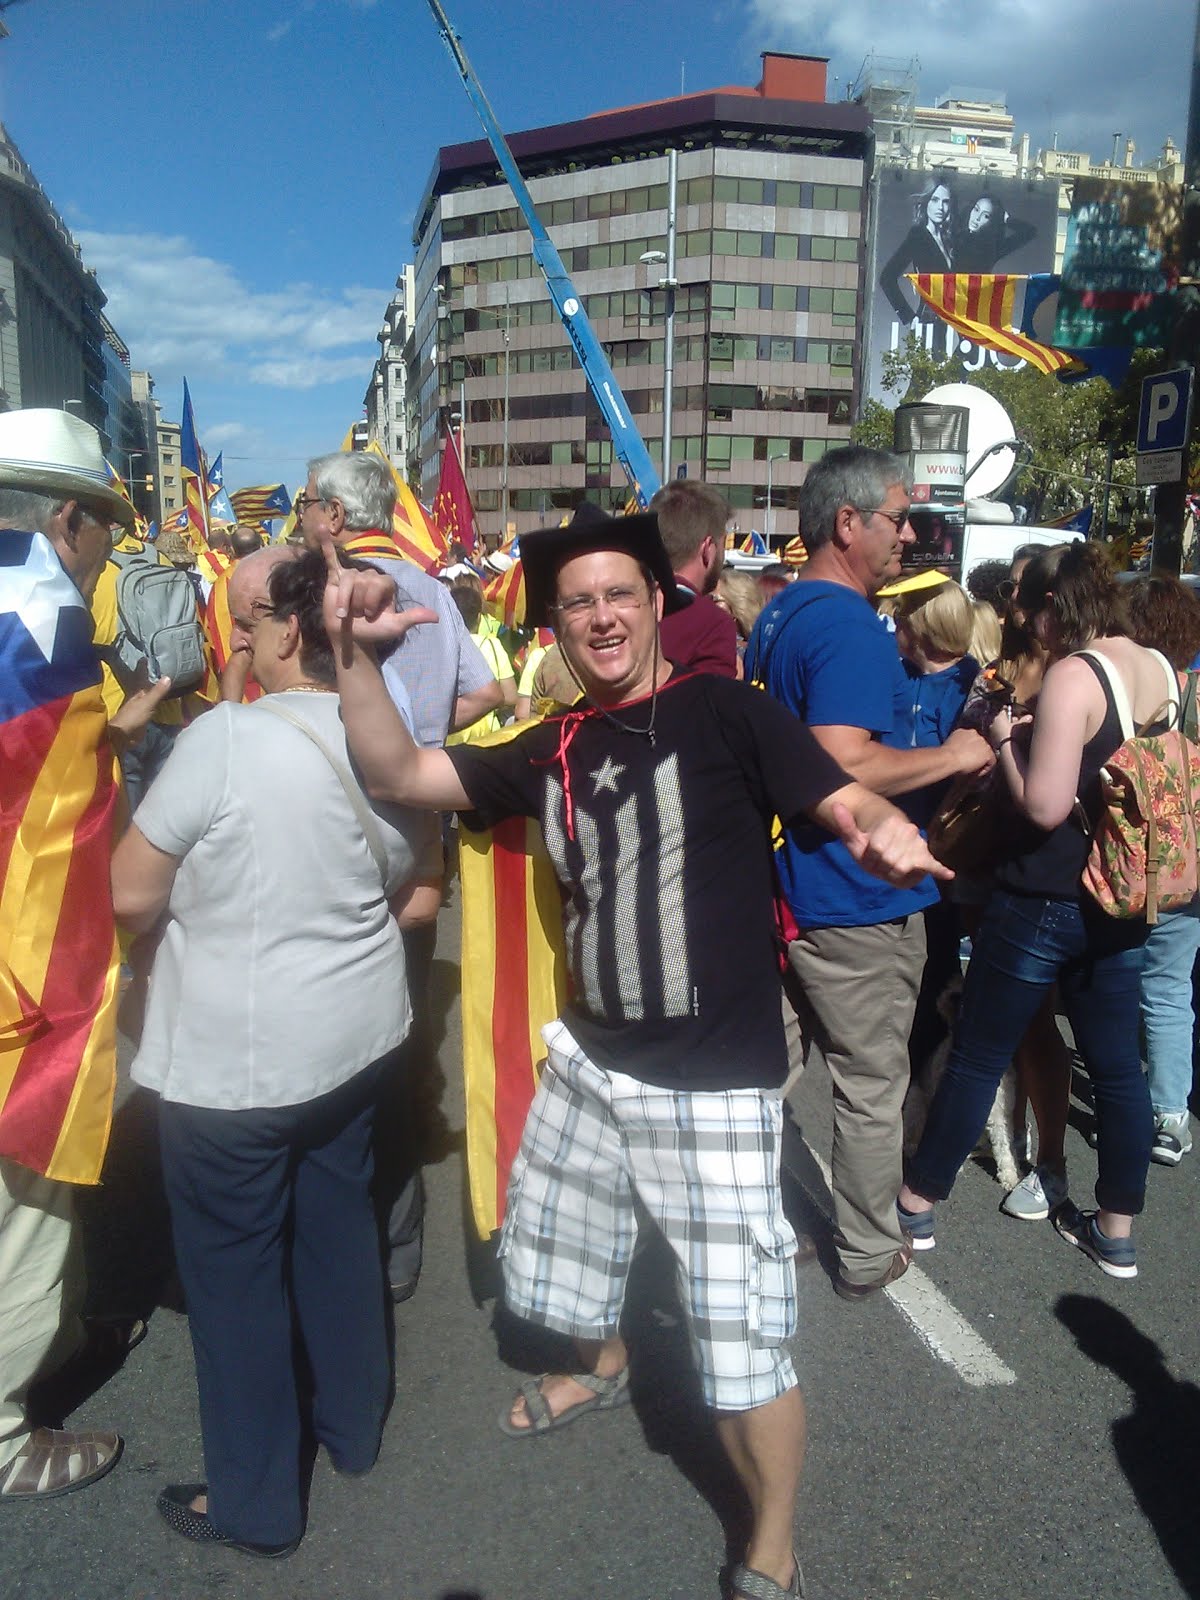 Anant perdut?? .... per la Diada de Catalunta 2017